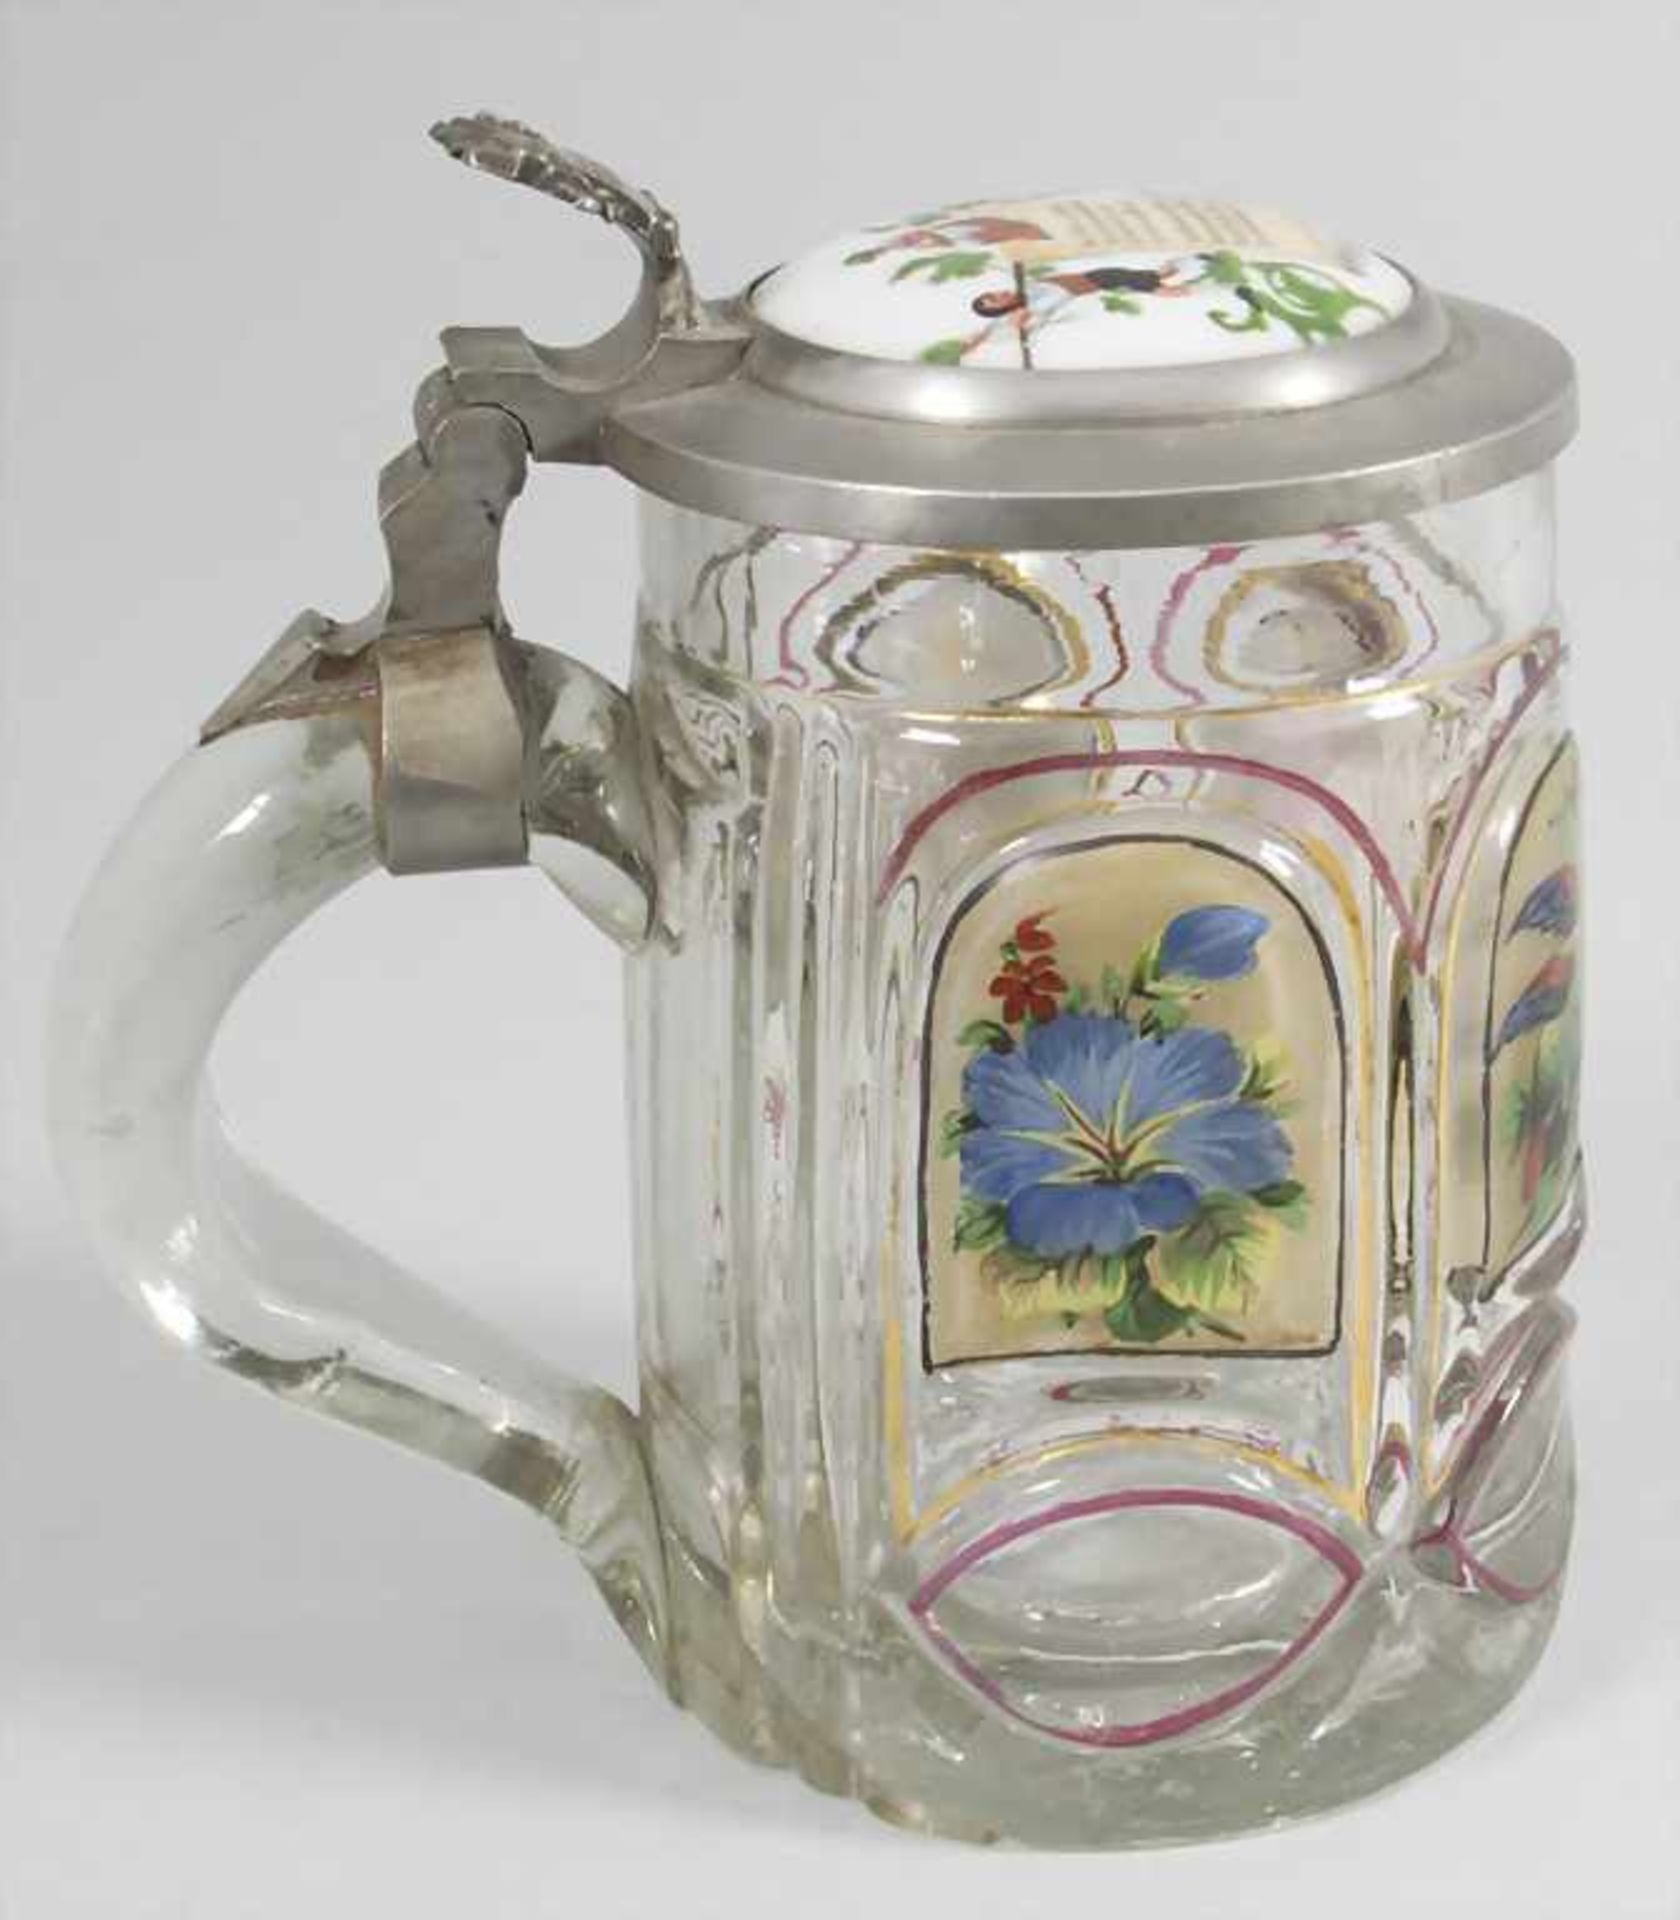 Glaskrug mit Figuren, Rosen und Vögeln / A glass jug with figures, birds and rosesMat - Bild 2 aus 5